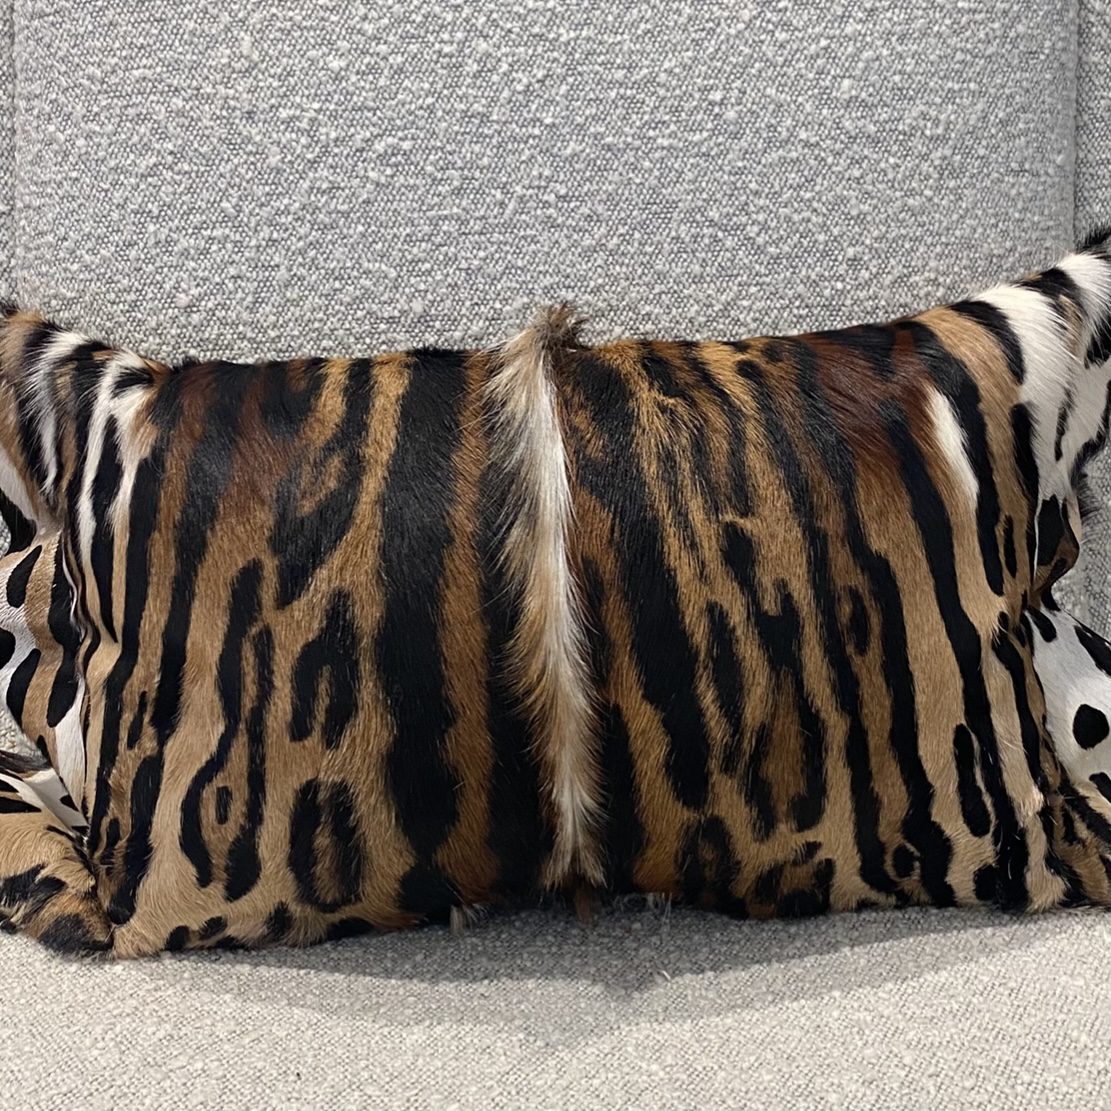 Tiger Skin Cushion